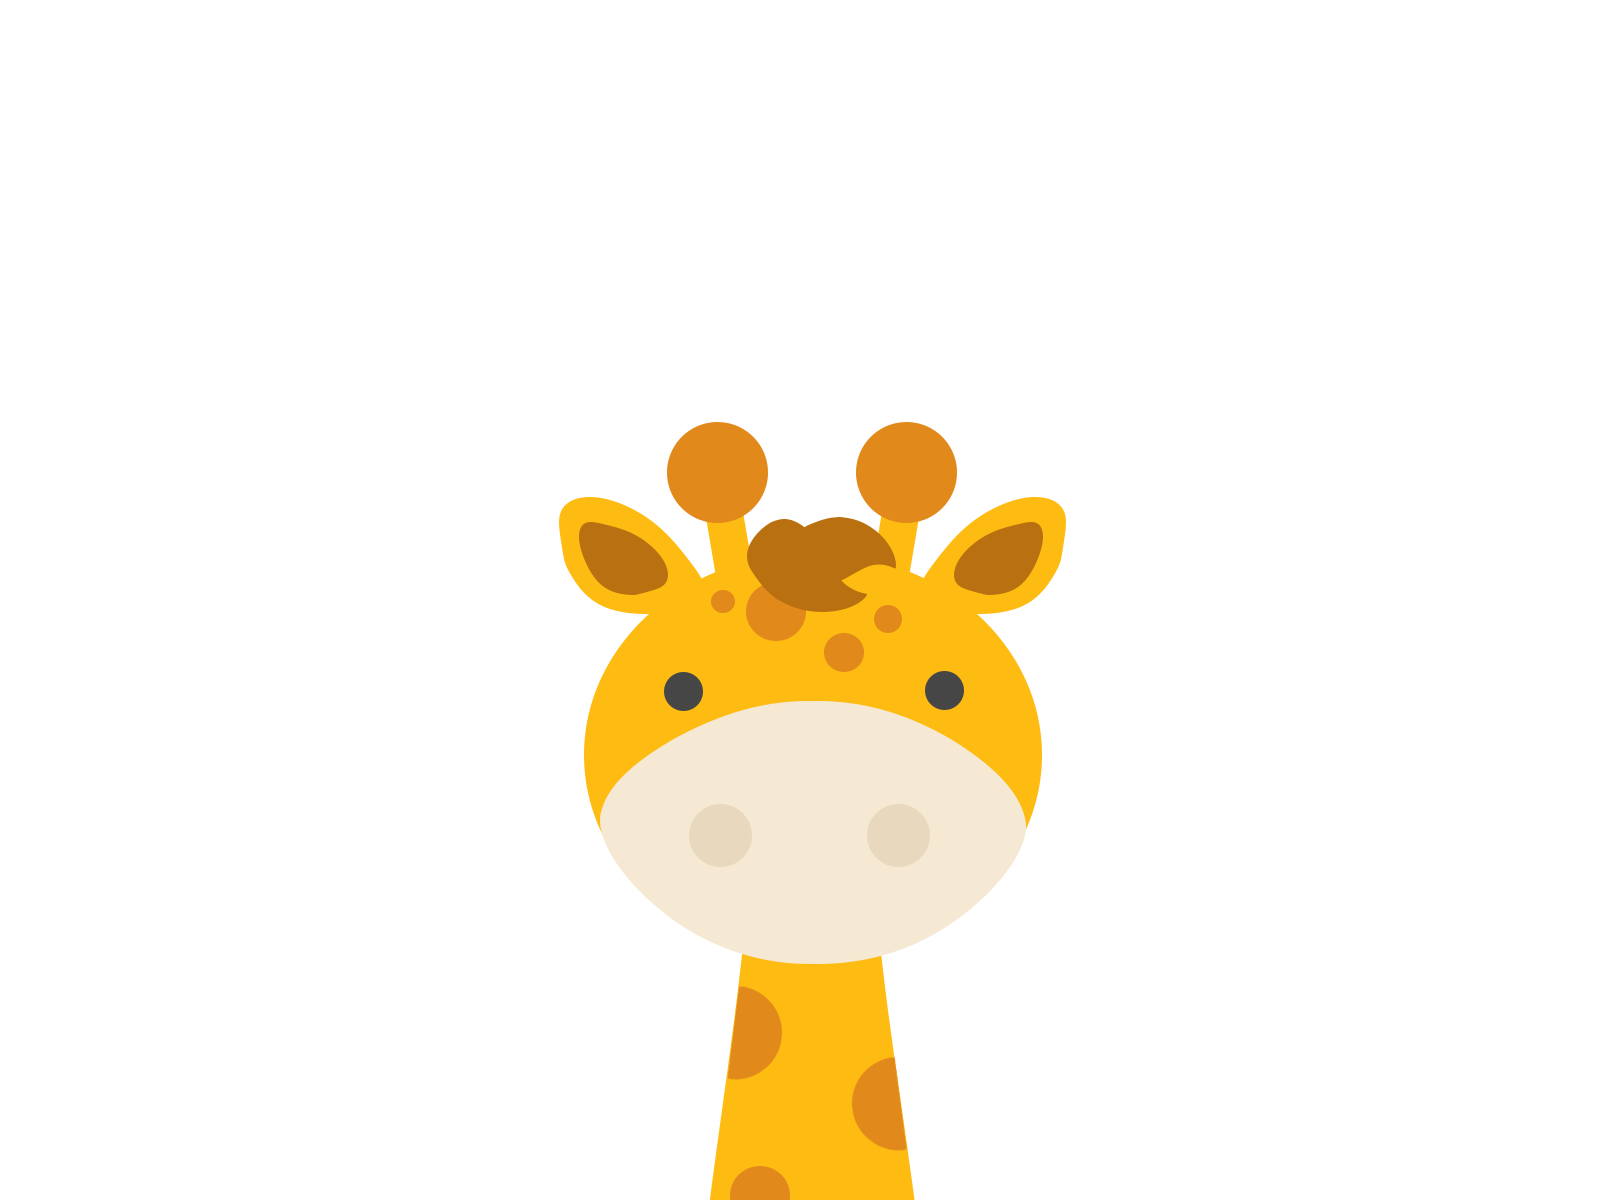 Giraffe by Jayde Bloomer on Dribbble